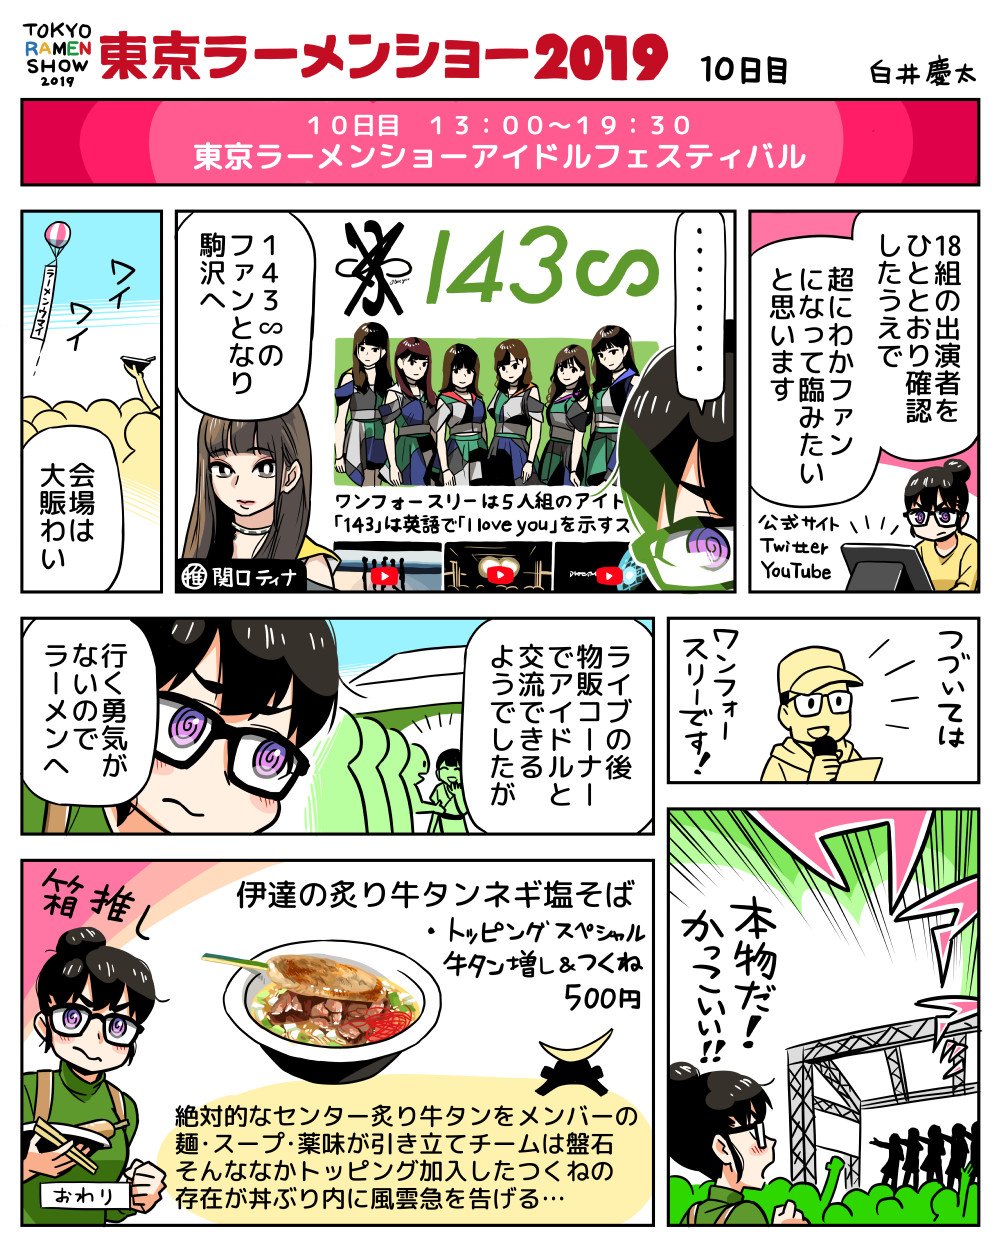 東京ラーメンショー19の漫画 10日目 イラストの慶弔